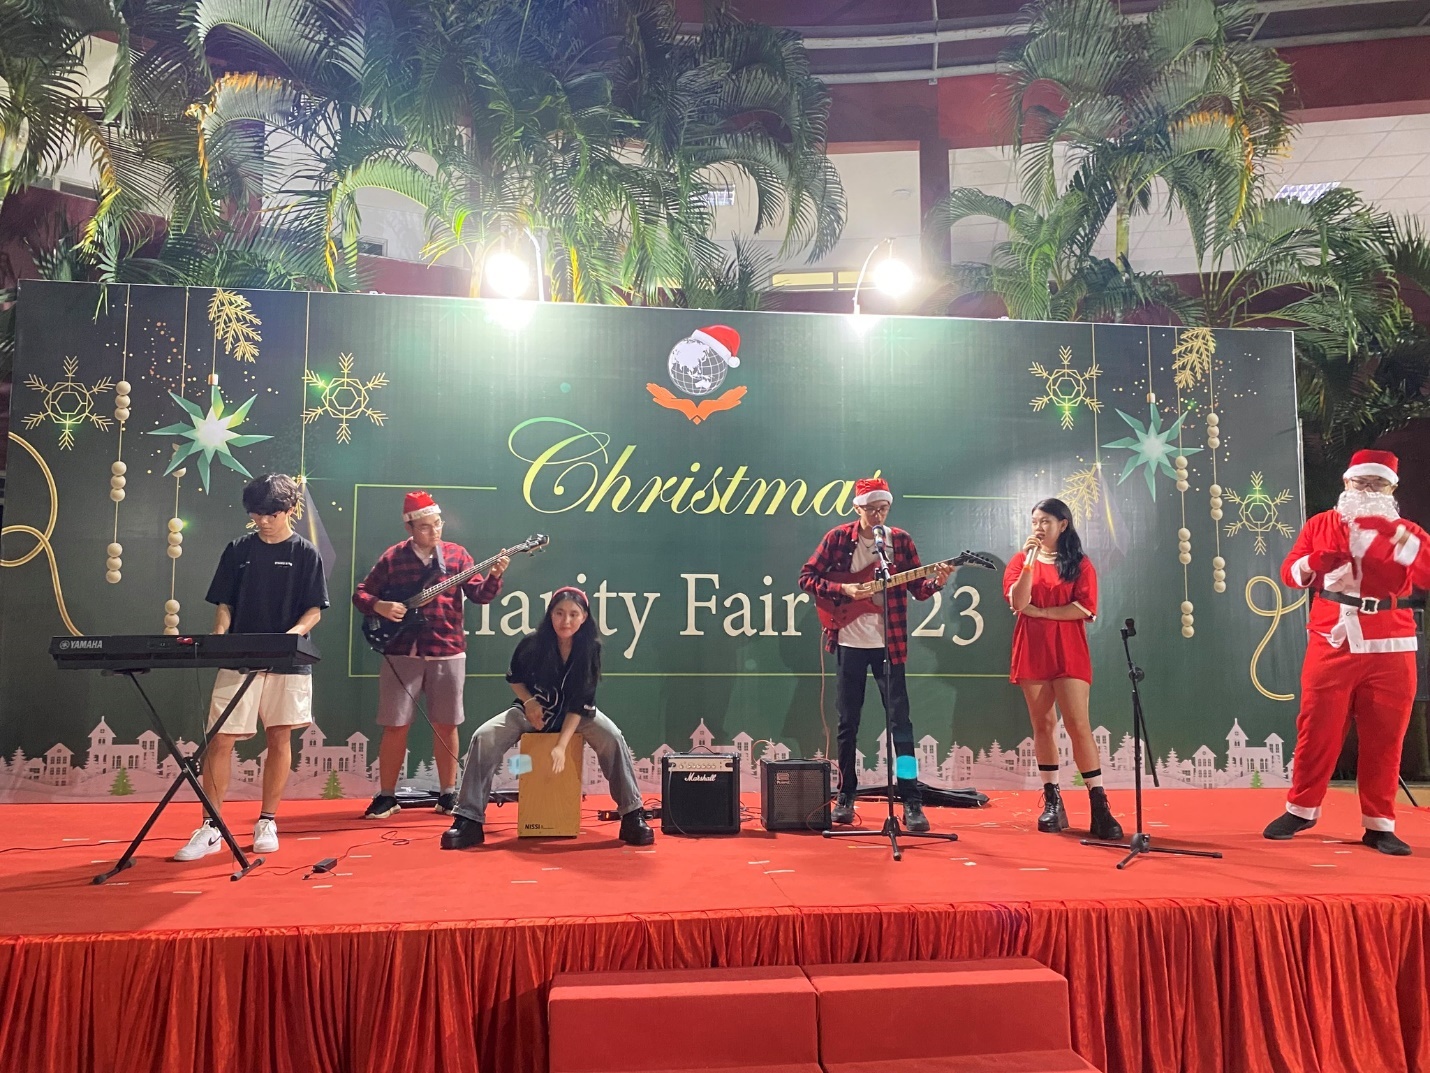 Giáng sinh rộn ràng, ngập tràn sẻ chia tại hội chợ từ thiện Giáng sinh trường quốc tế Singapore - Ảnh 2.